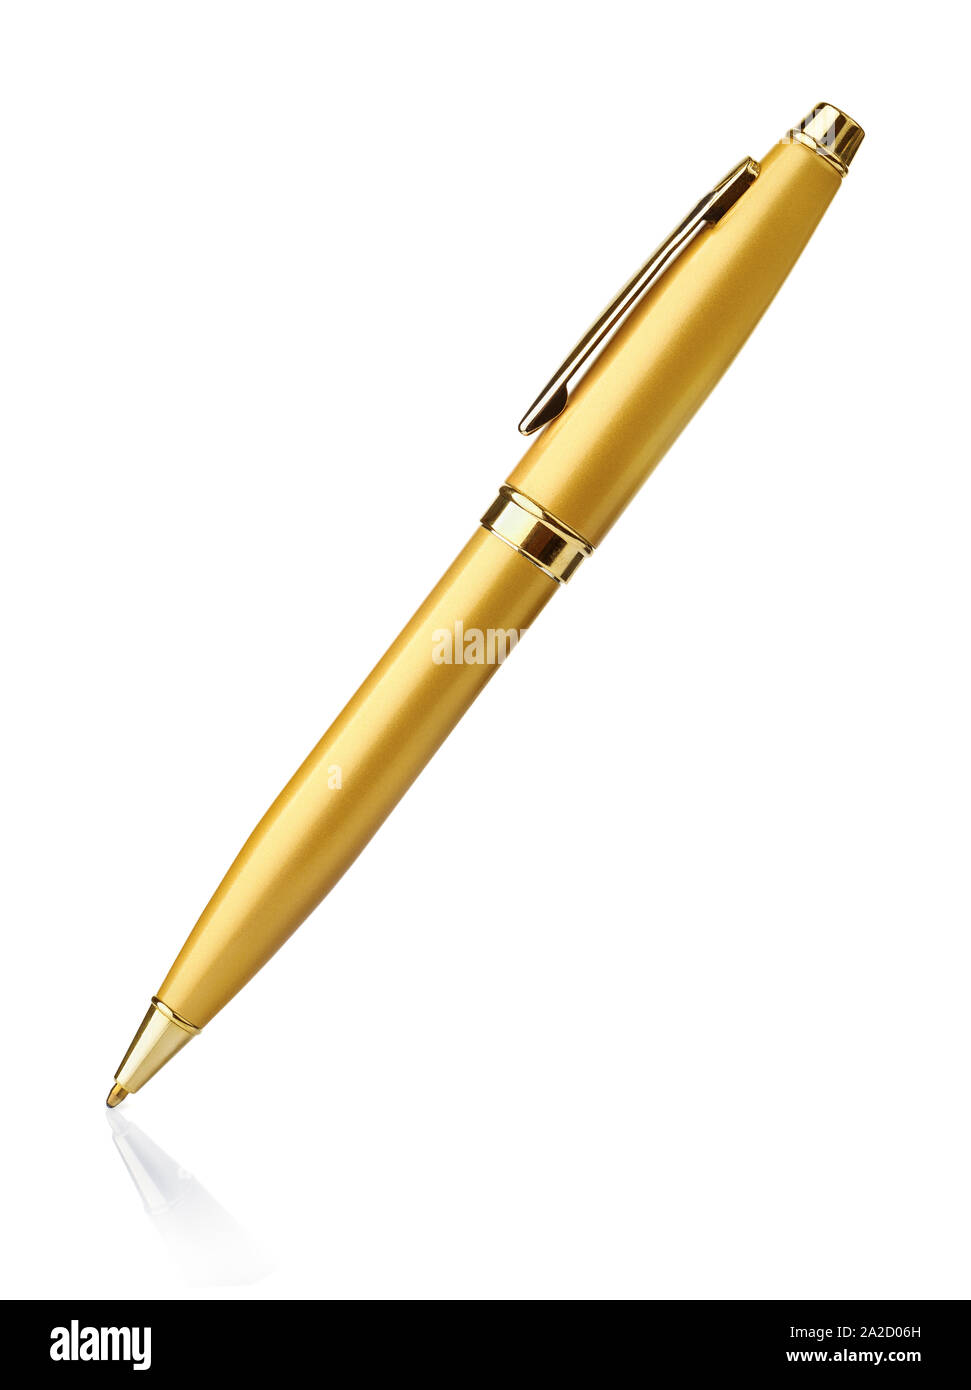 Golden ballpoint pen isolated on white Stock Photo